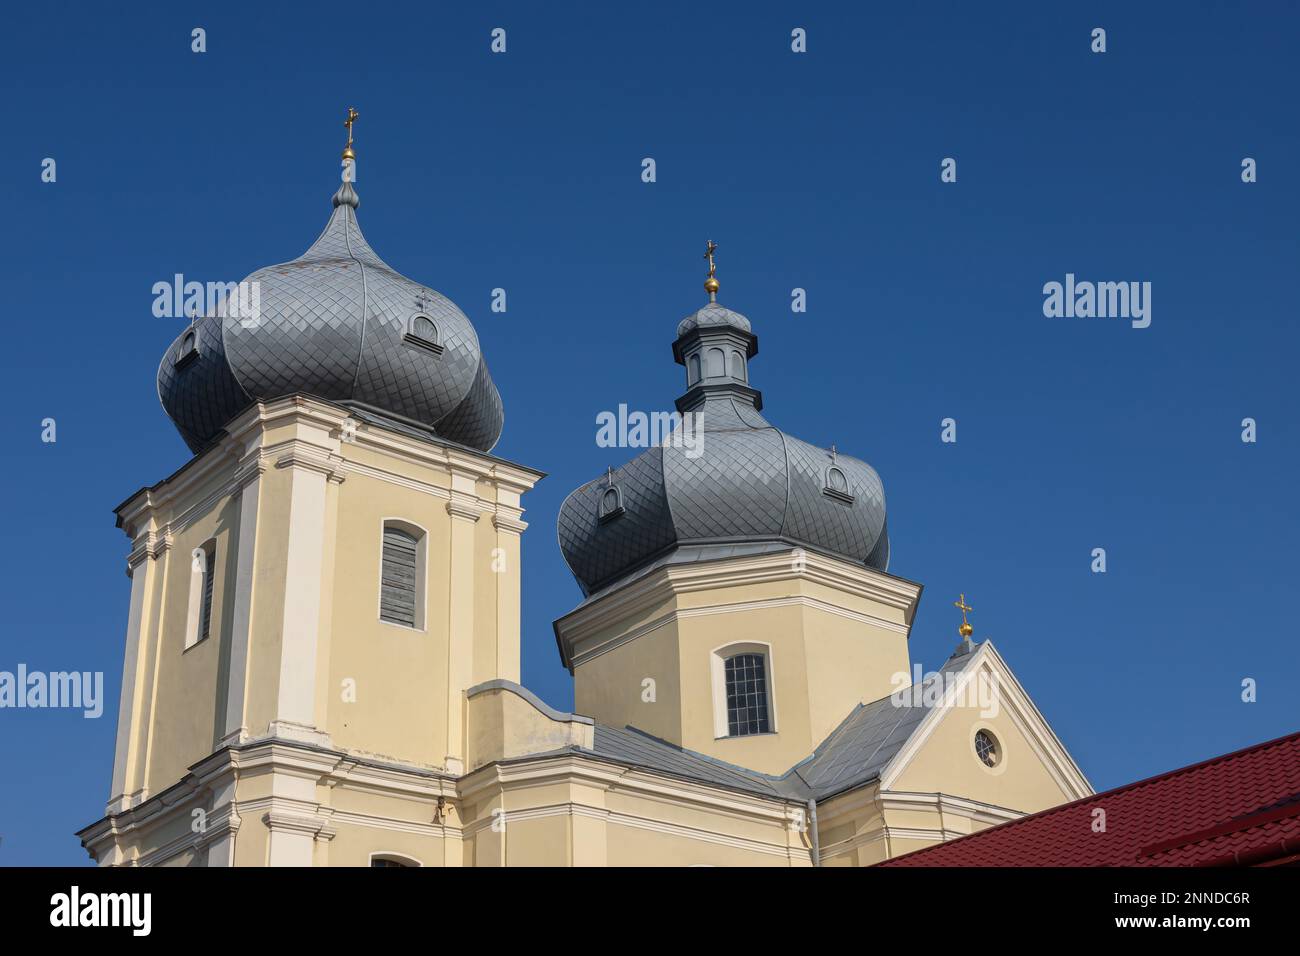 Eglise grecque-catholique Résurrection du Christ à Zbarazh, région de Ternopil, Ukraine. Banque D'Images